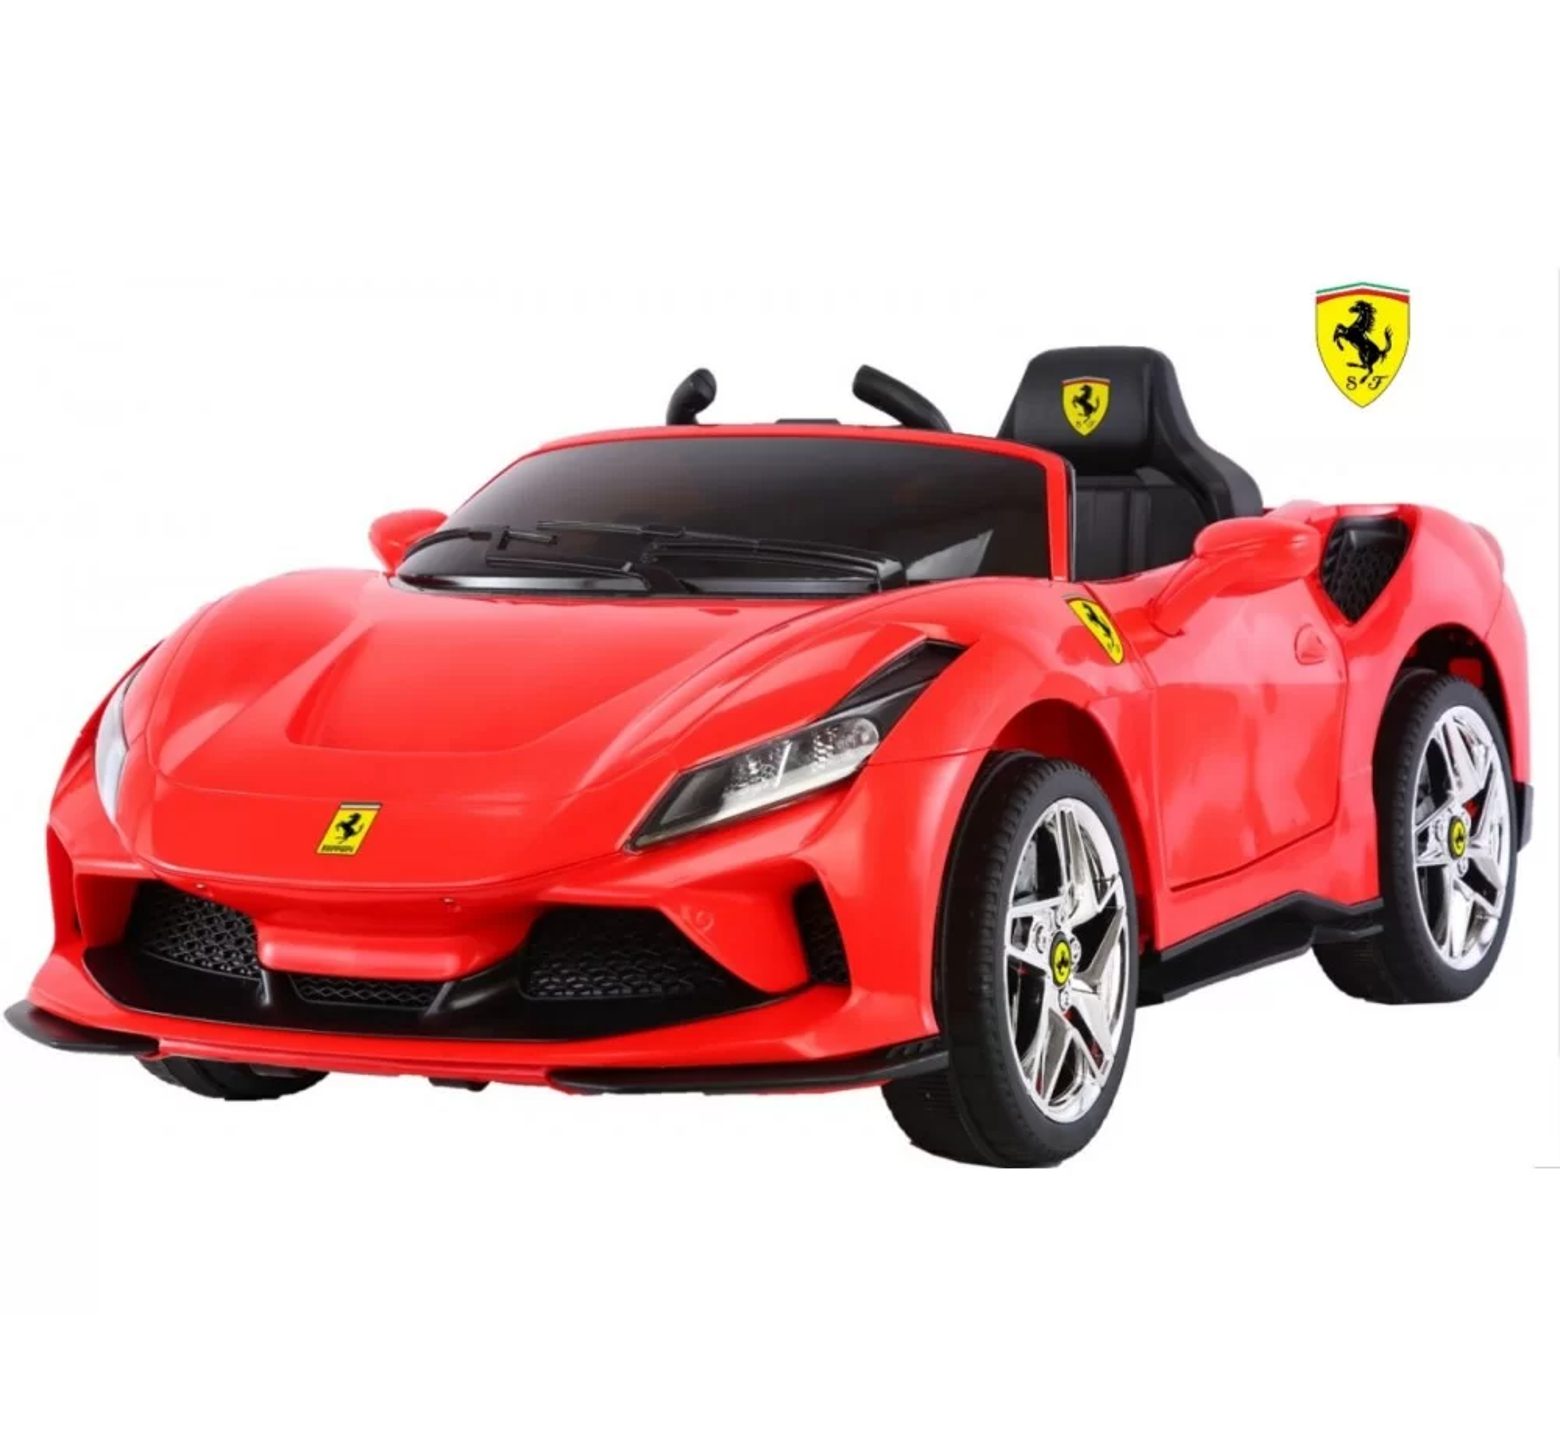 Ηλεκτροκίνητο Παιδικό Αυτοκίνητο 12V Licensed Ferrari με 4 μοτέρ σε κόκκινο χρώμα